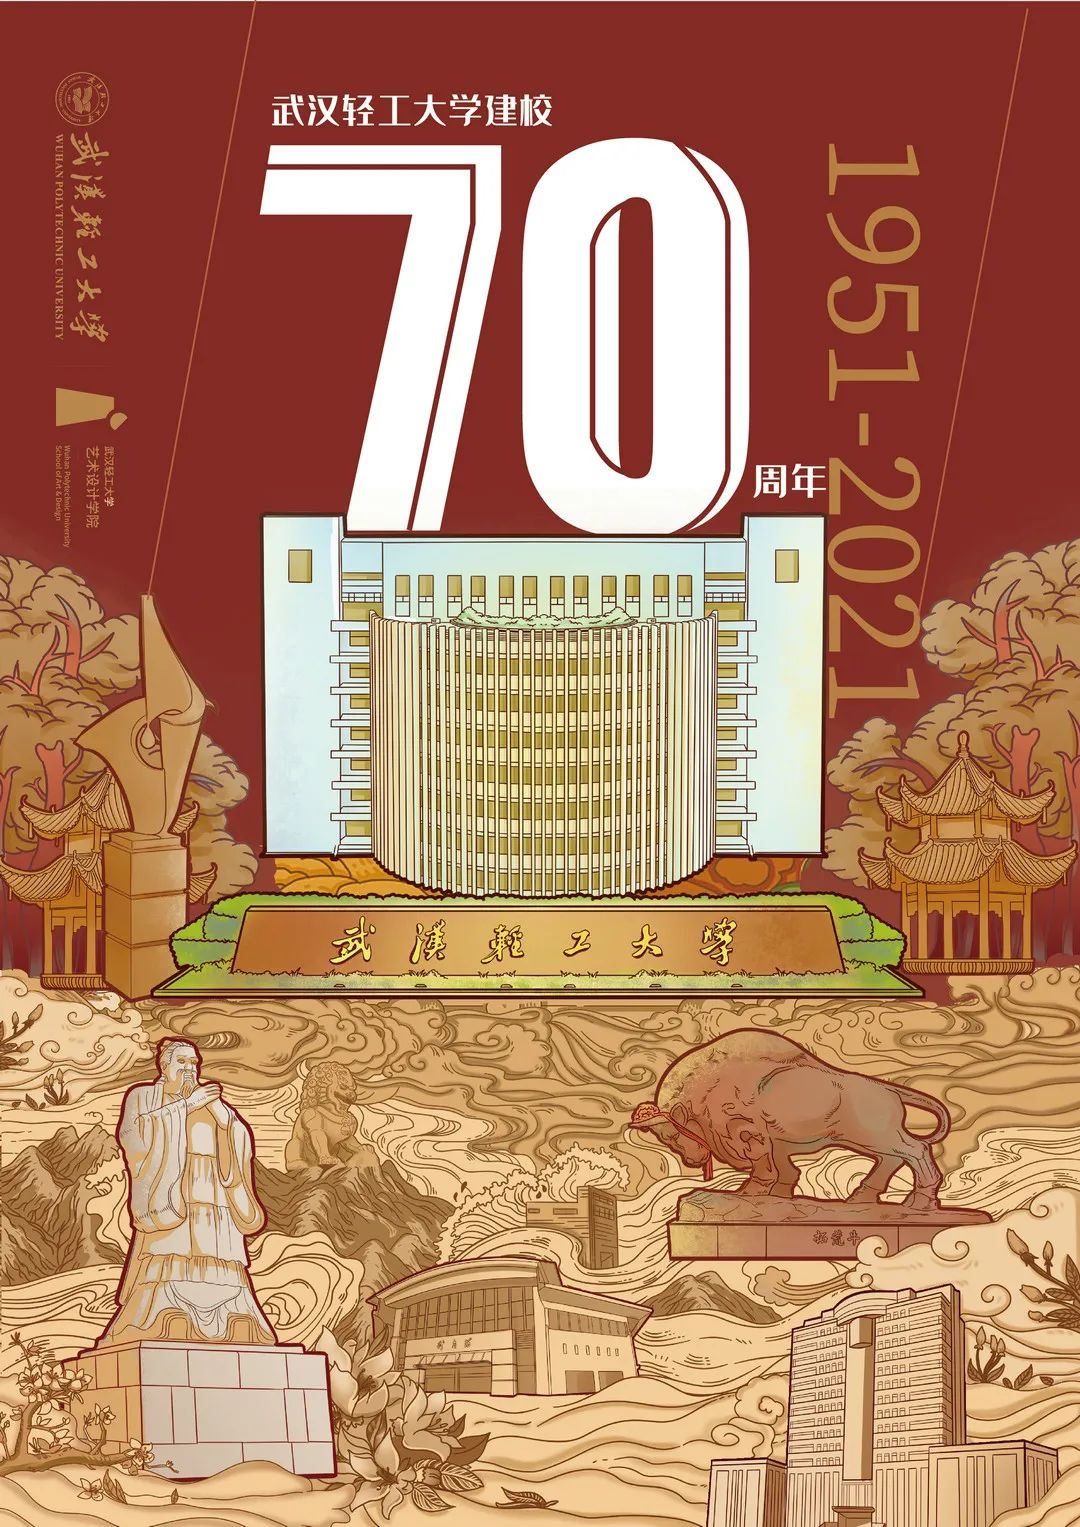 武汉轻工大学校庆70周年设计大赛获奖作品展第03期校庆海报设计